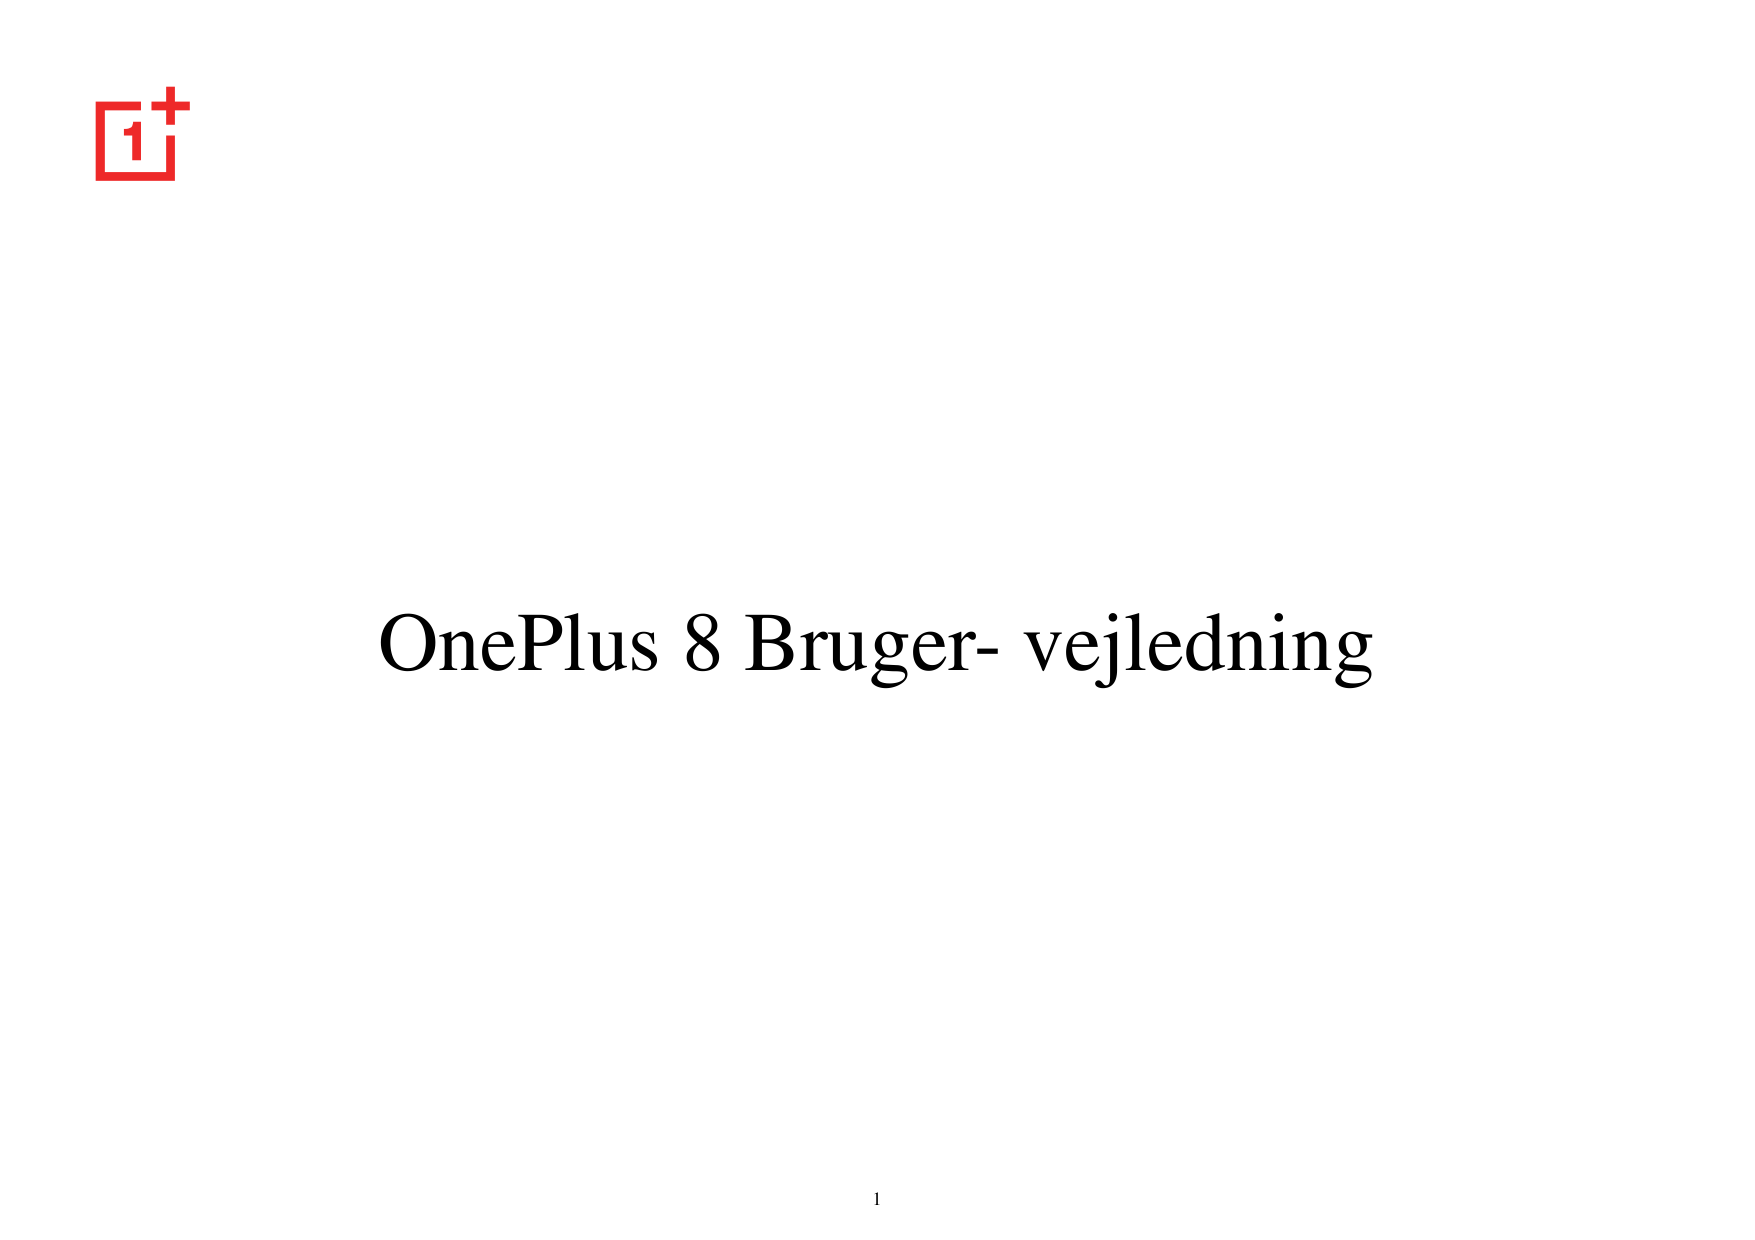 OnePlus 8 Bruger- vejledning1